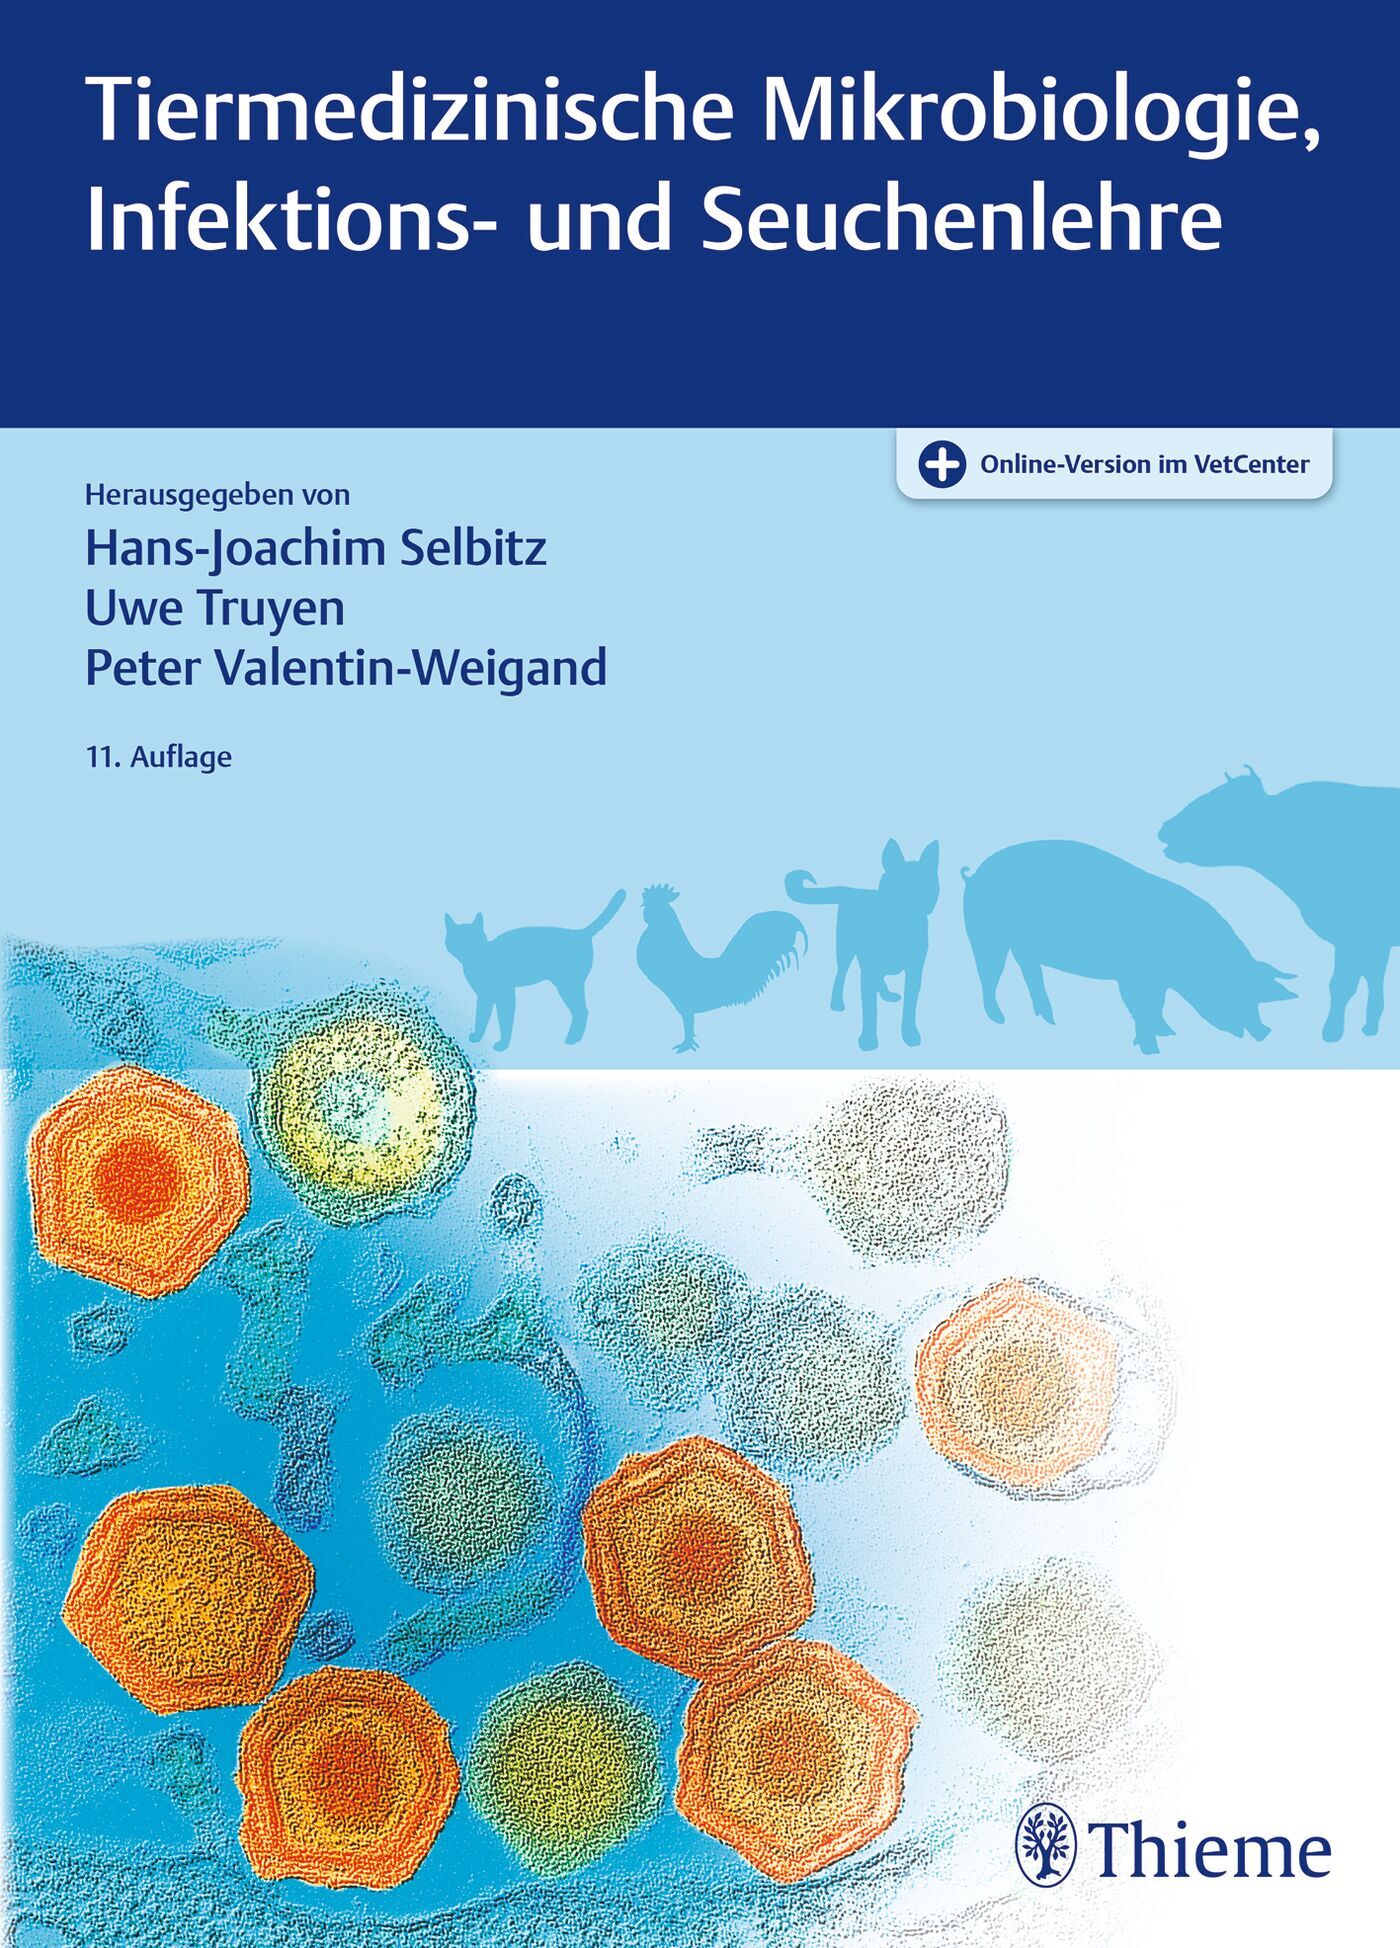 Tiermedizinische Mikrobiologie, Infektions- und Seuchenlehre, 9783132442528